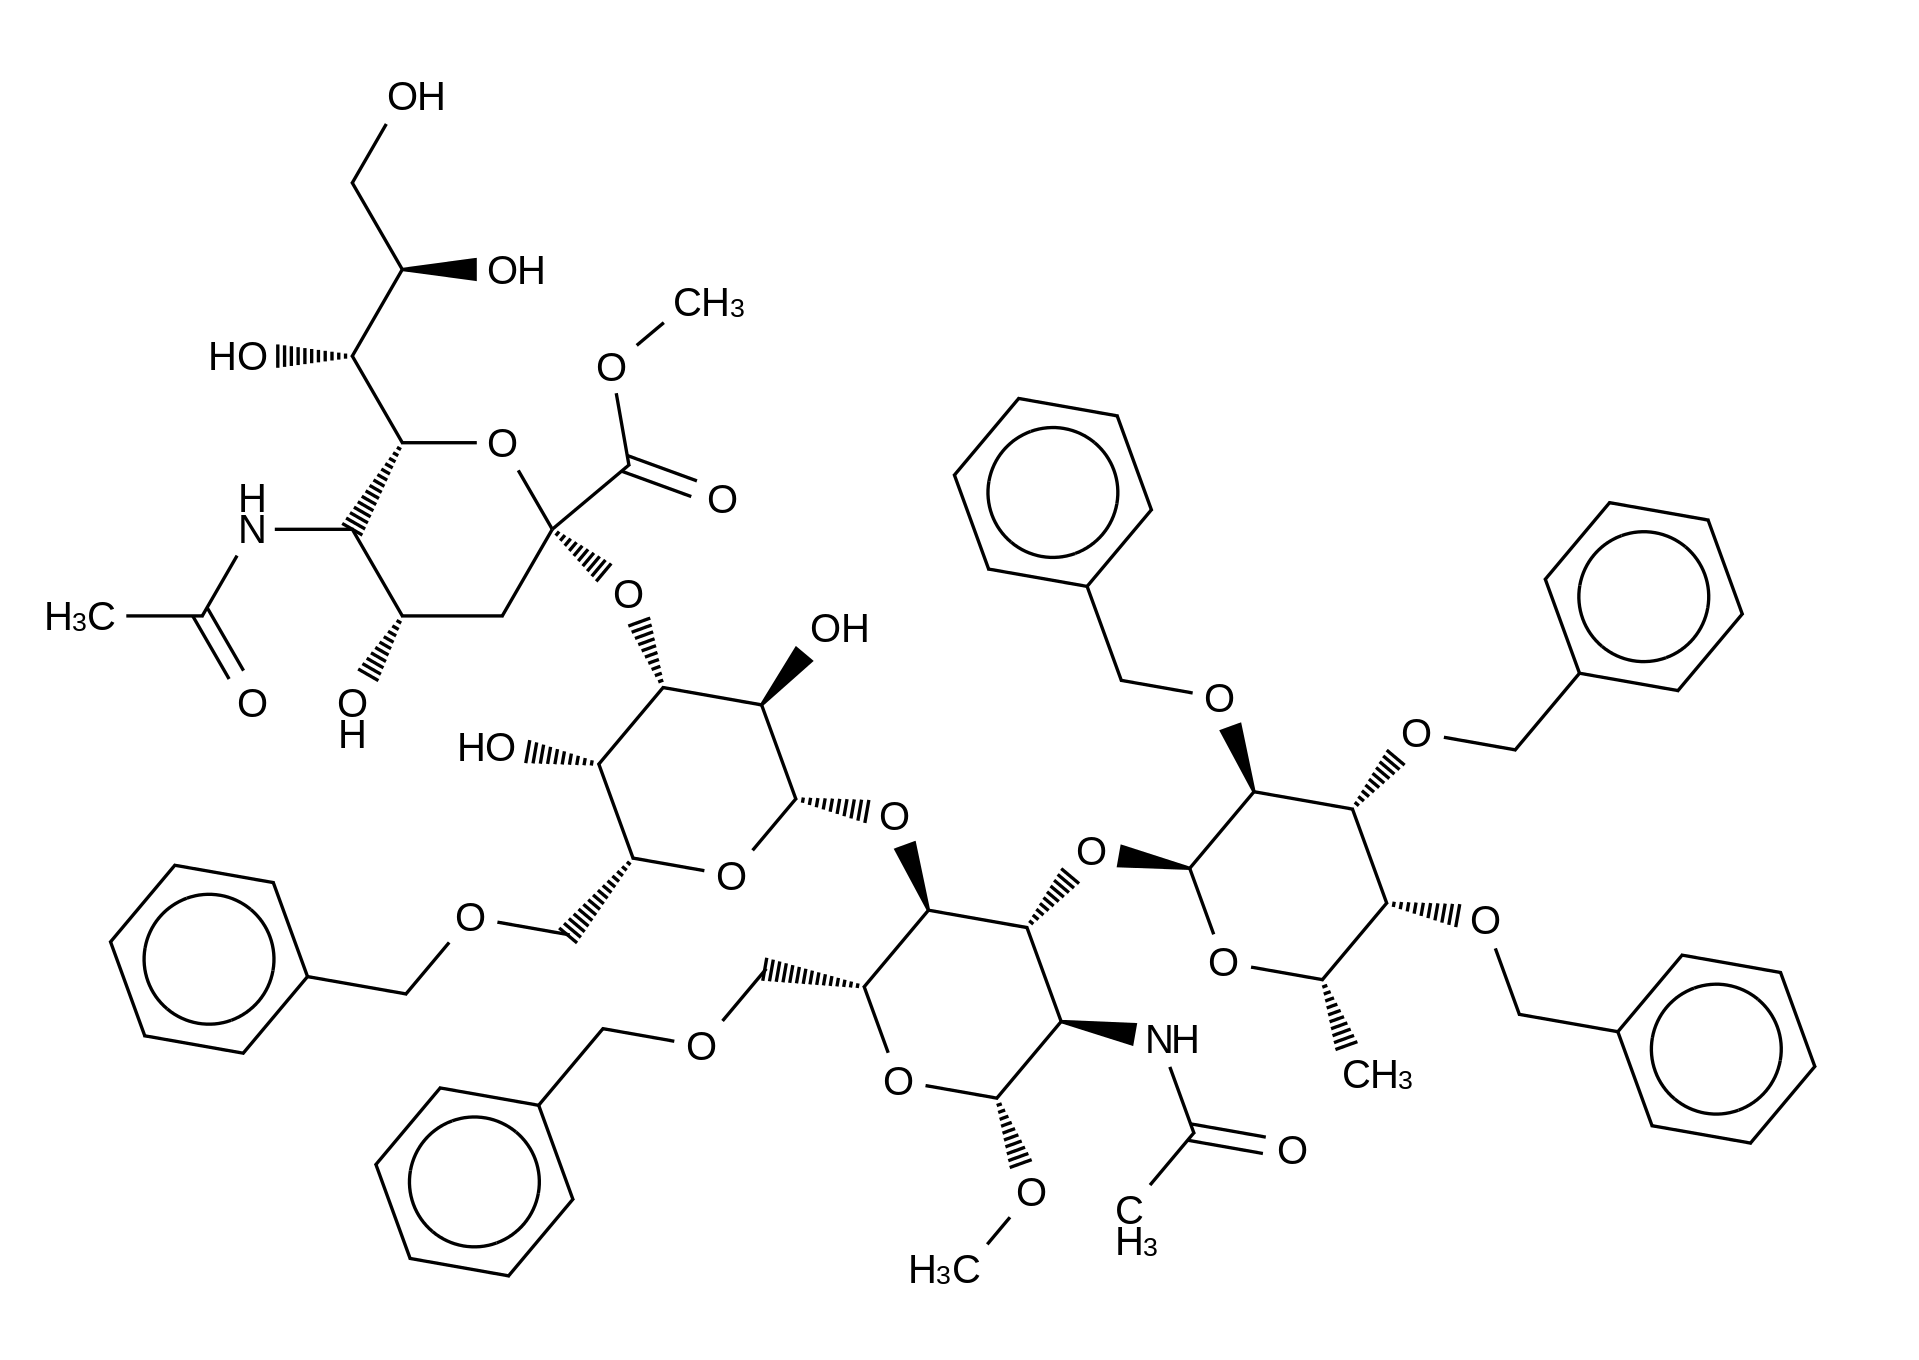 Penta-O-benzyl Sialyl Lewis X Methyl Glycoside Methyl Ester